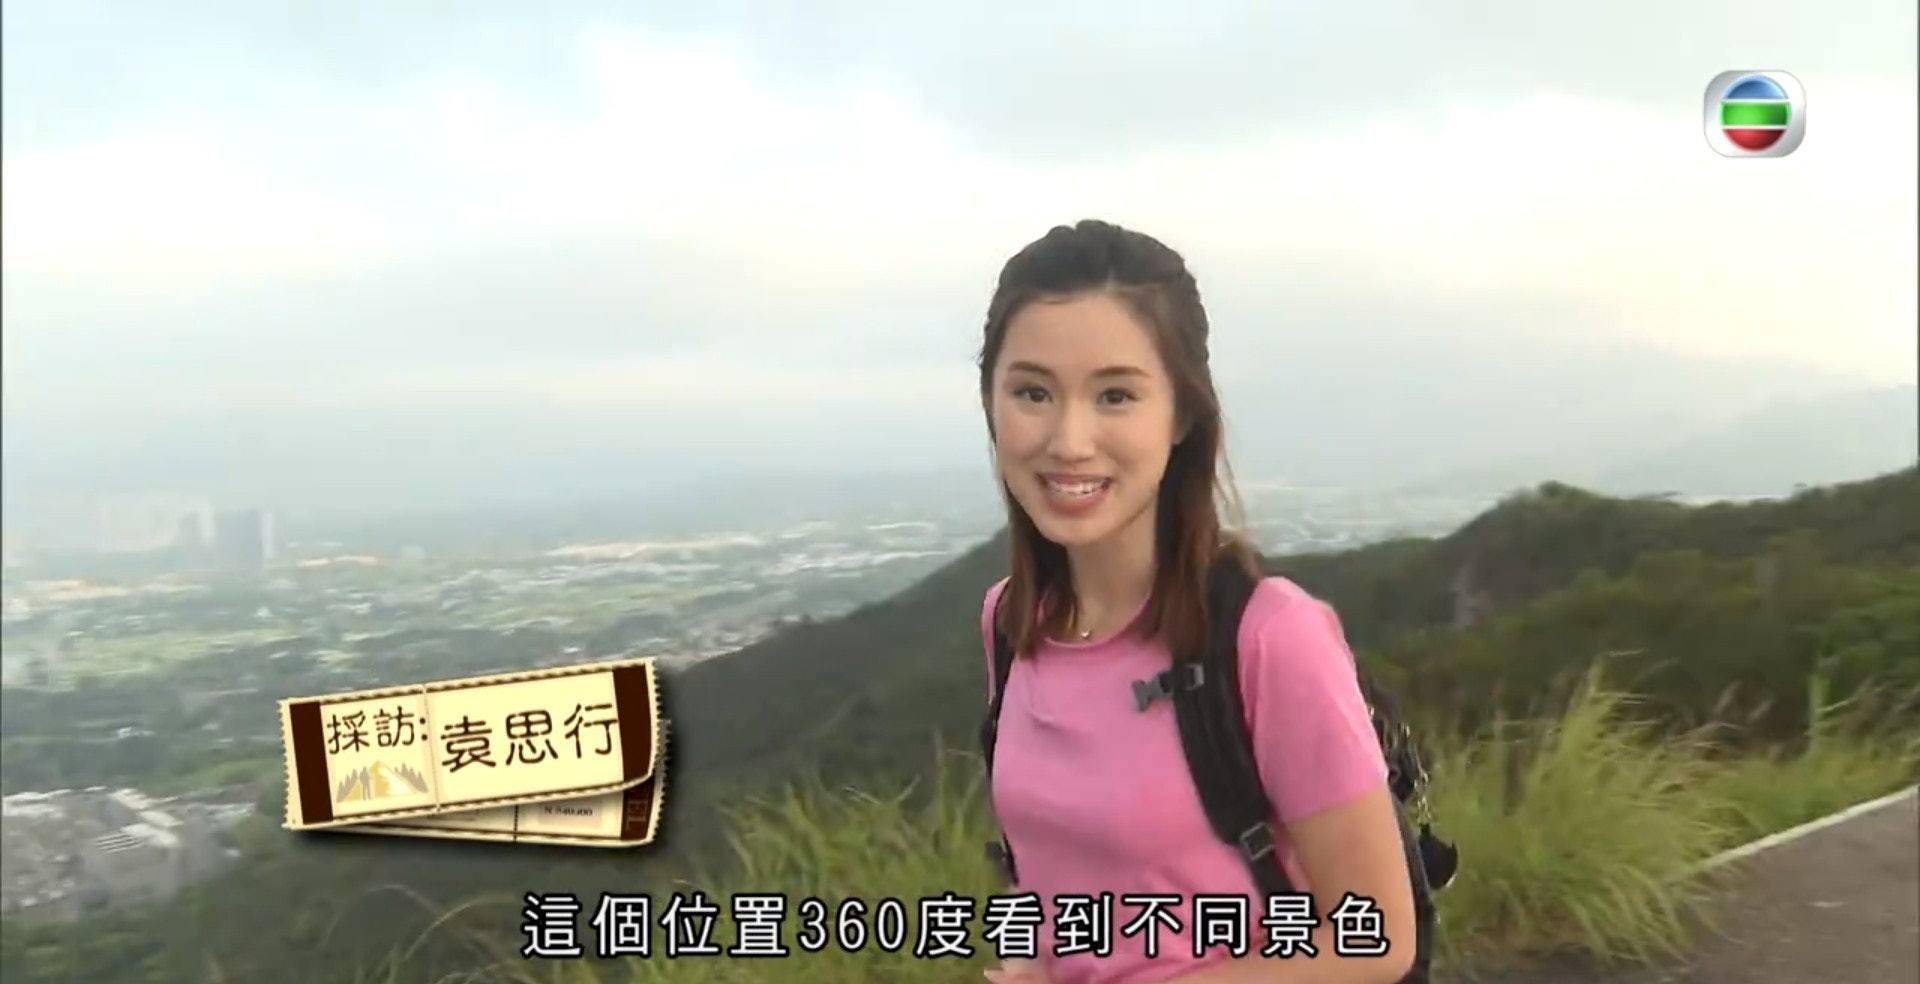 TVB节目《行行有好景》袁思行粉红运动装加灿烂笑容获赞运动女神